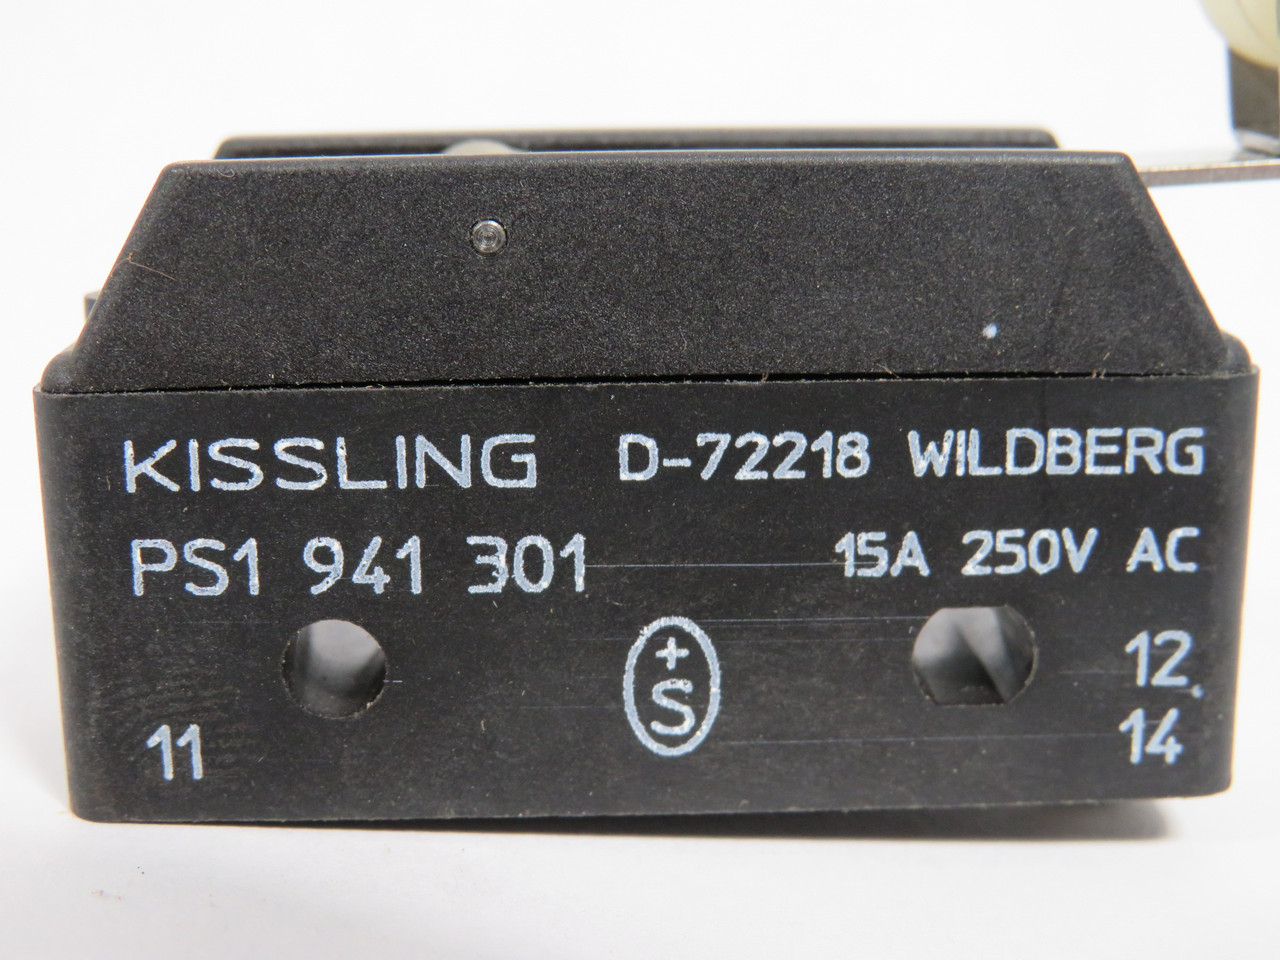 Kissling PS1941301 Roller Lever Limit Switch 15 Amp 250V NOP